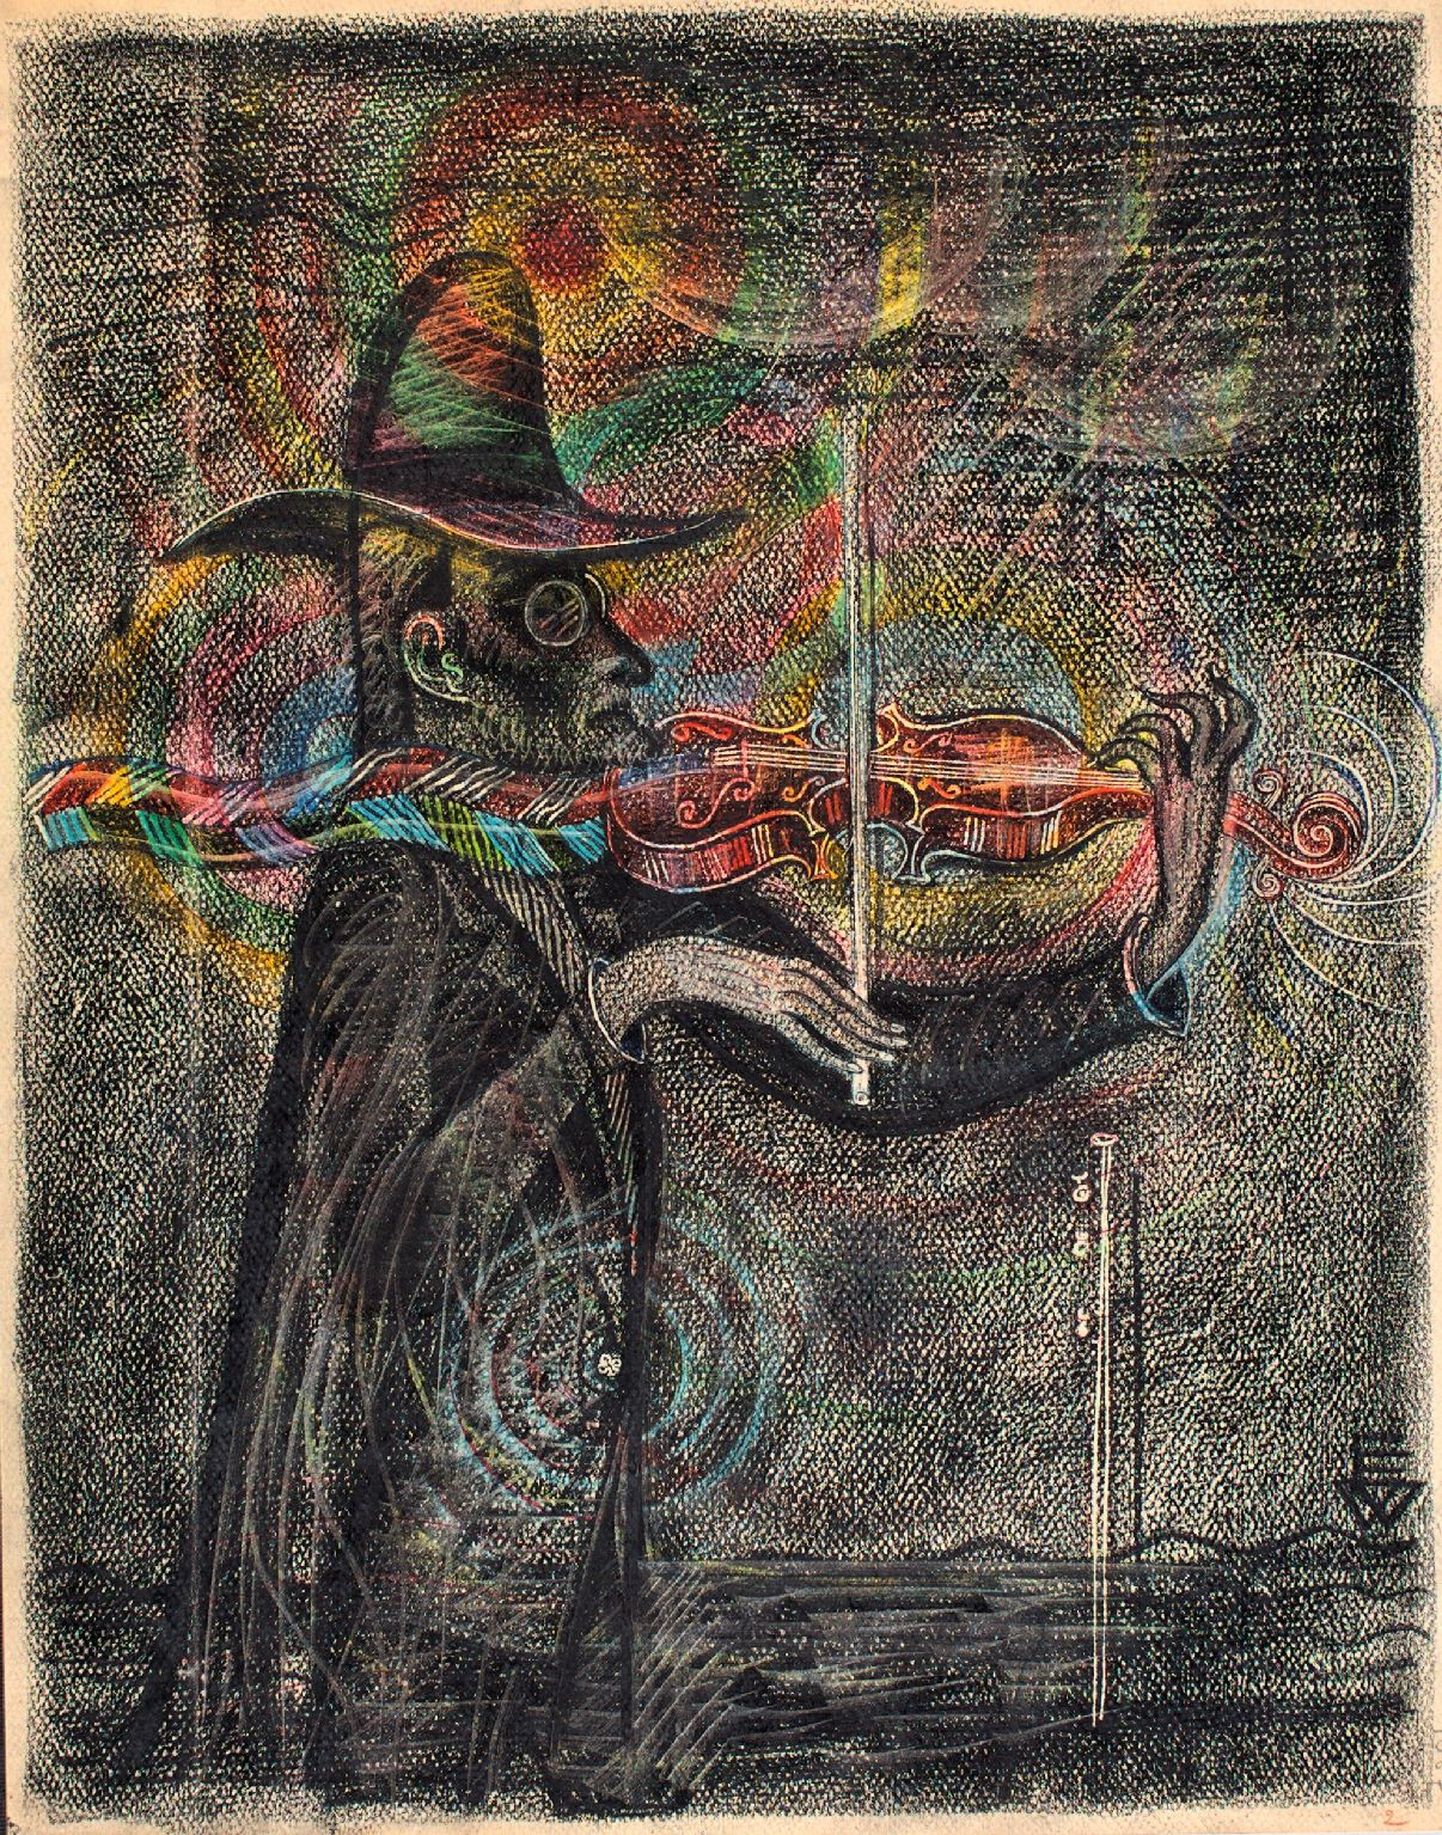 Näitusel on väljas ka Viiralti autoportreeline värviline joonistus «Viiuldaja».